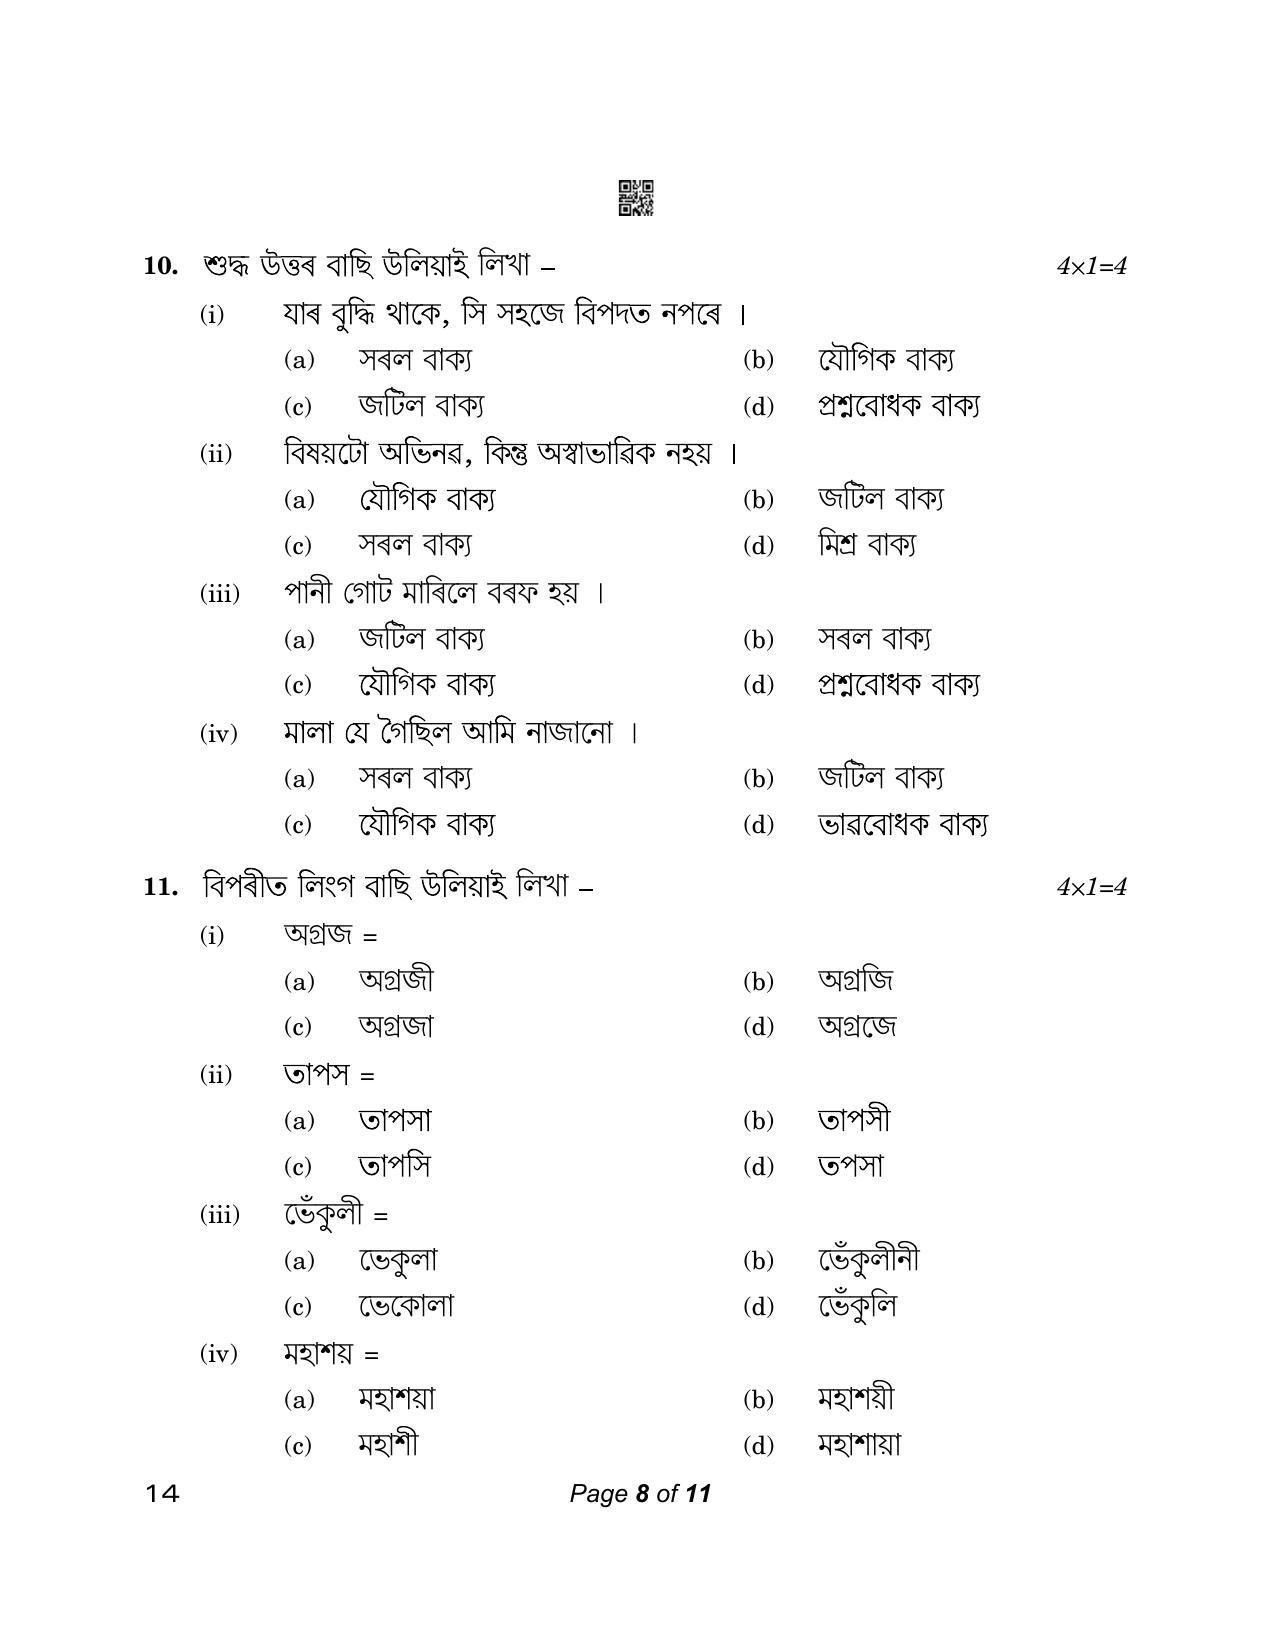 CBSE Class 12 14_Assamese 2023 Question Paper - Page 8